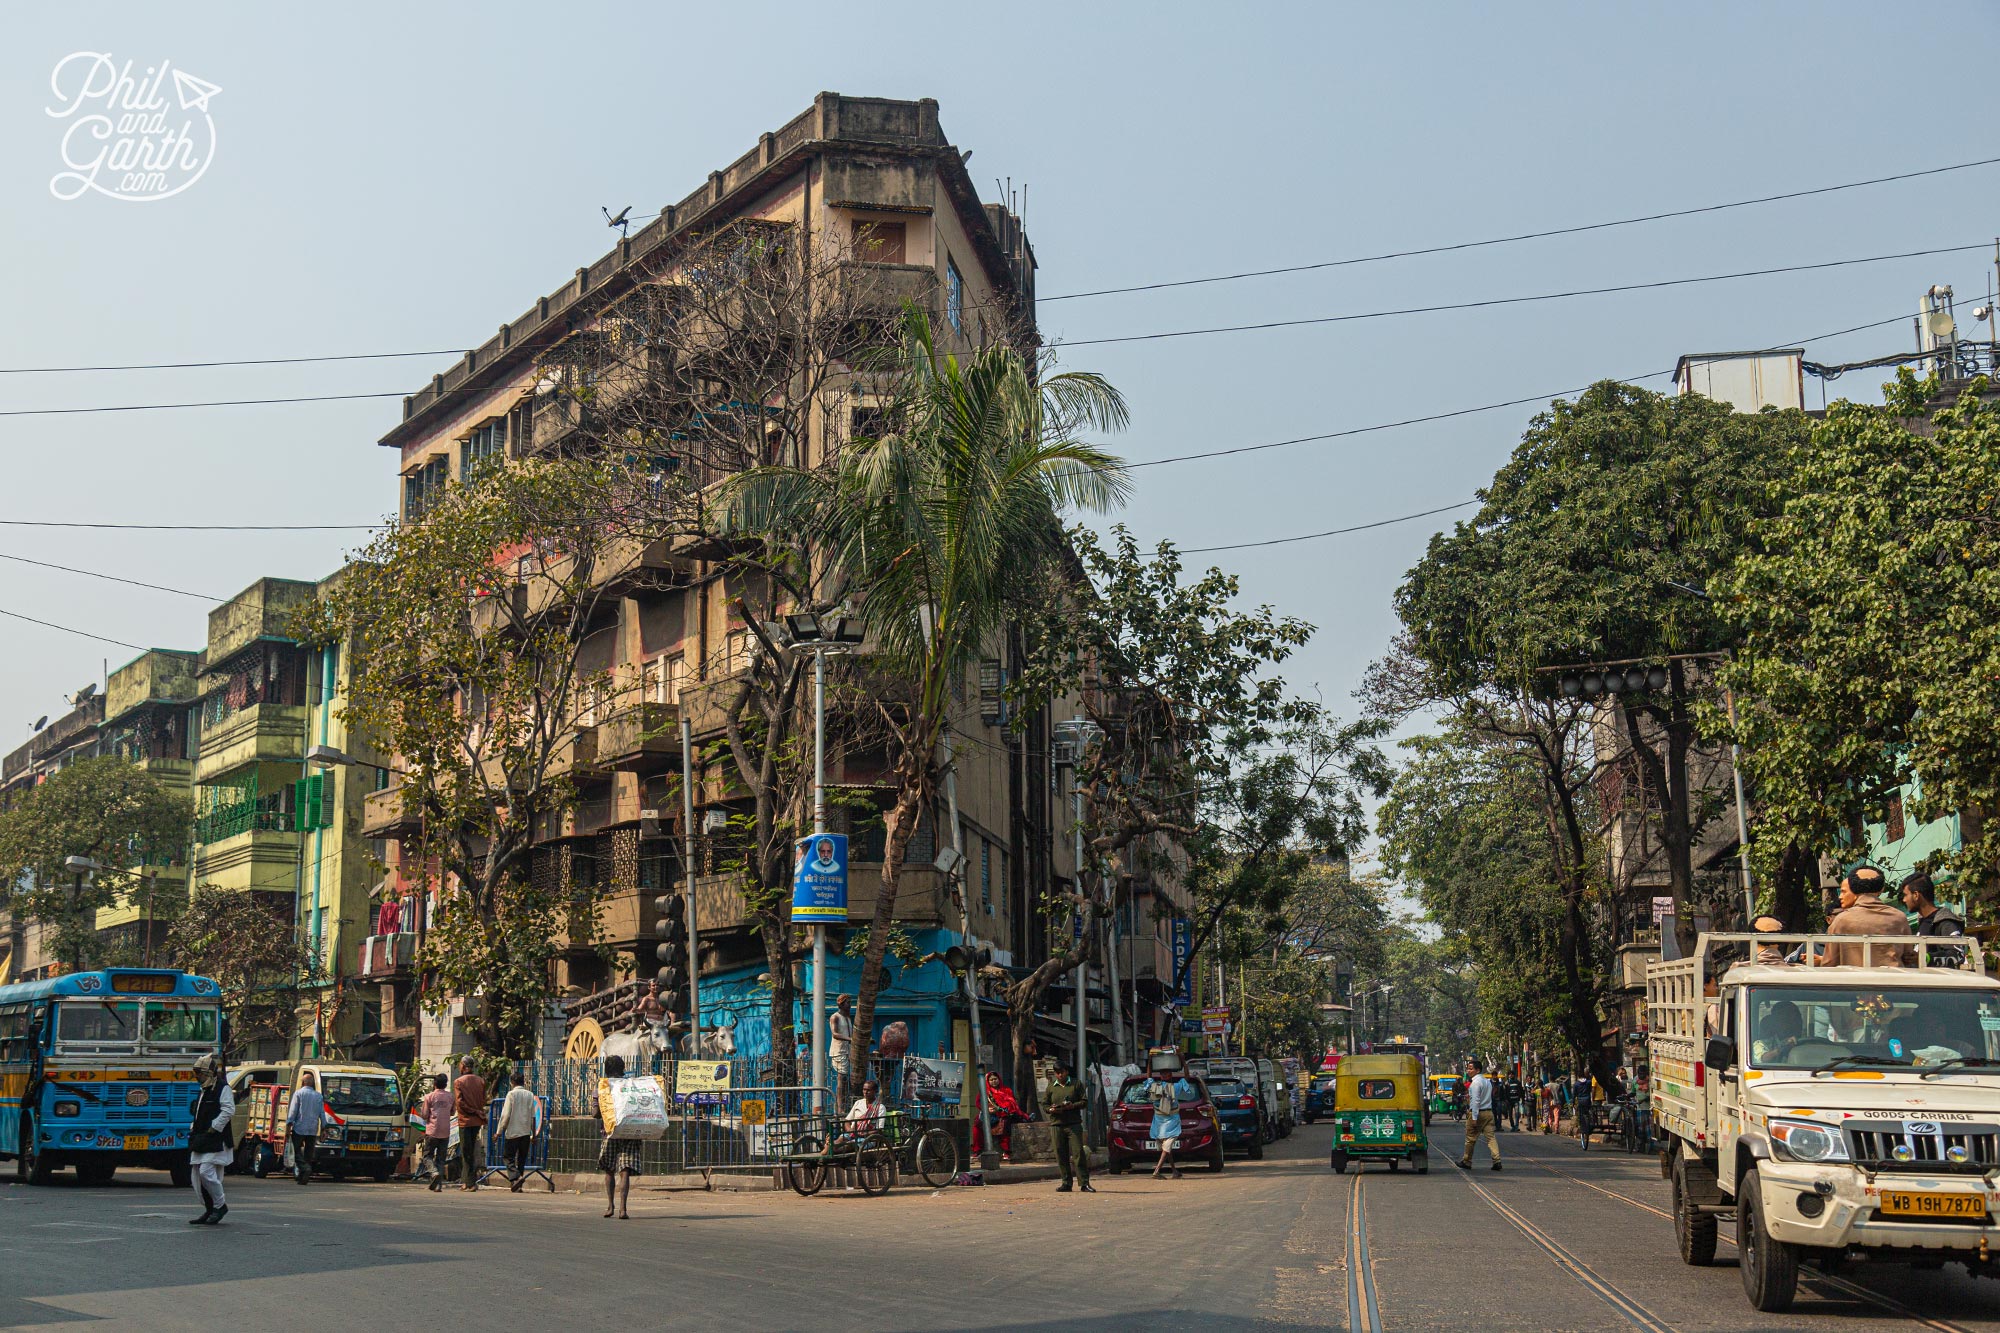 A street scene in North Kolkata